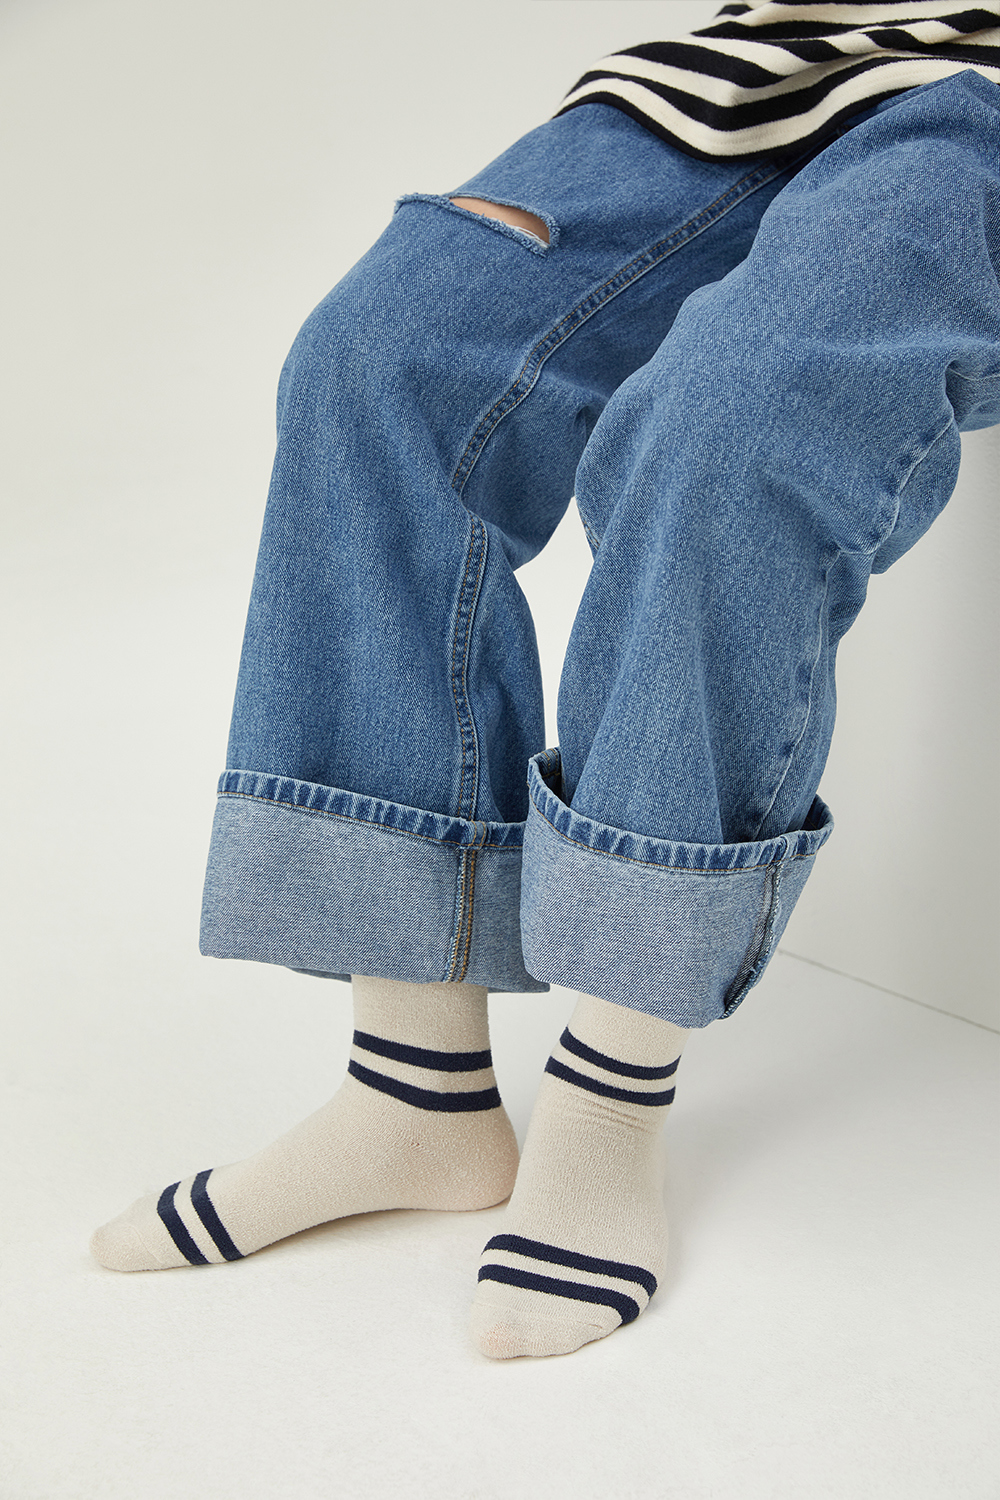 socks model image-S4L9